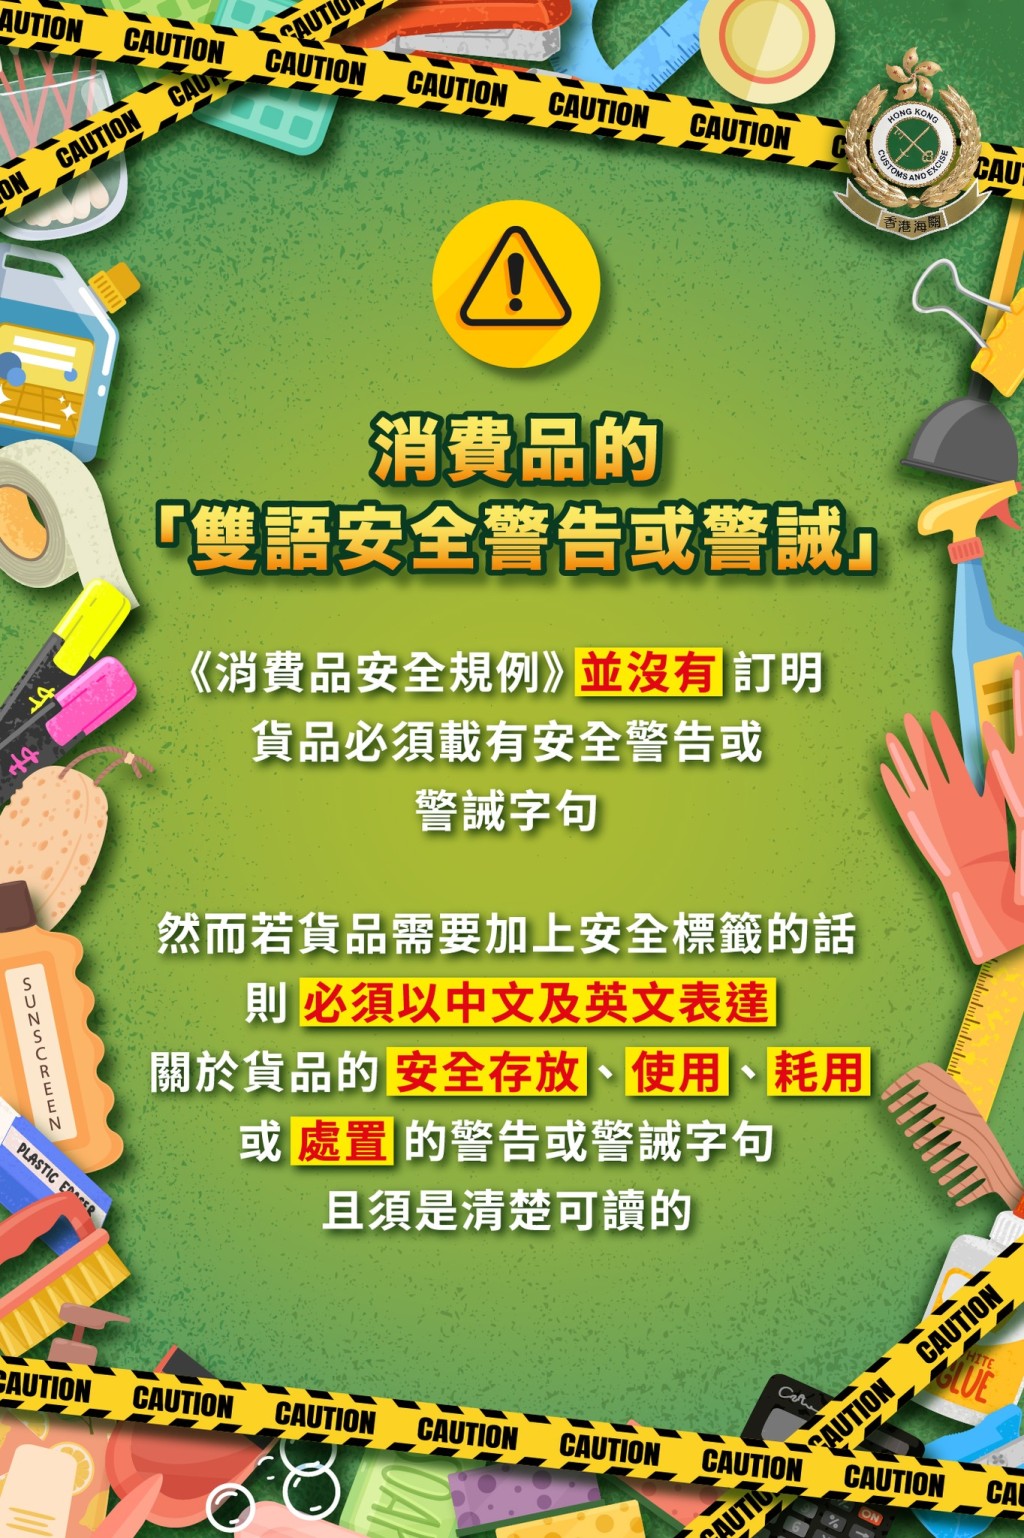 海关提醒商户须遵守规定为货品提供双语标签。香港海关facebook图片